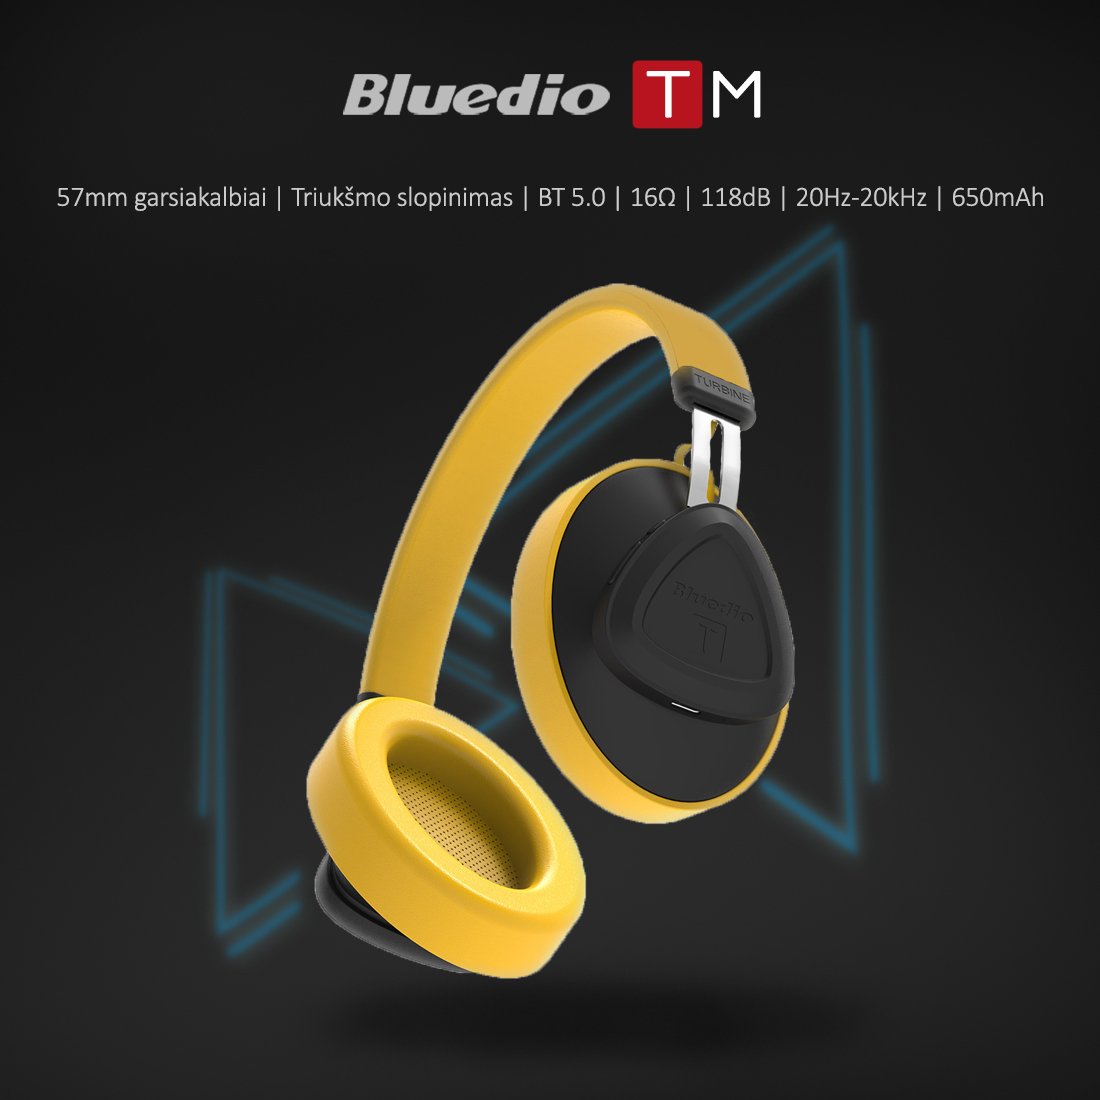 Fraction fake Traditional Belaidės ausinės Belaidės ausinės Bluedio TM, Geltona kaina | pigu.lt